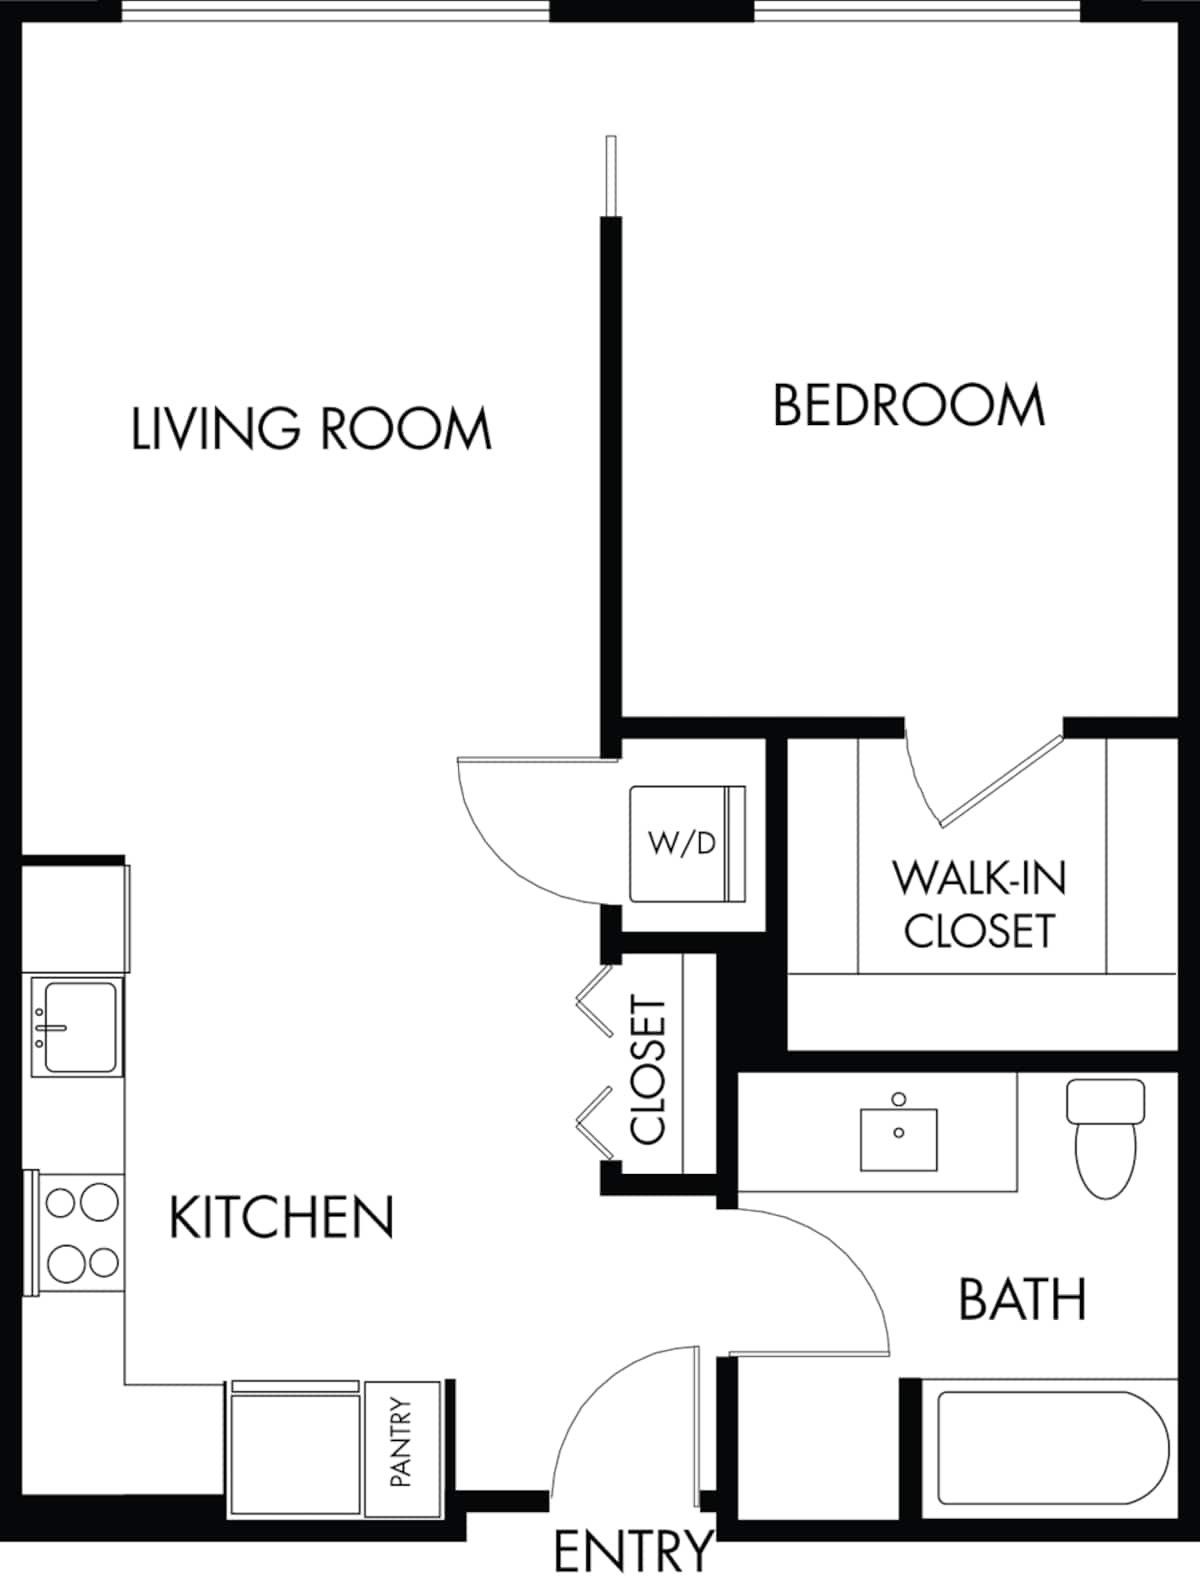 Floorplan diagram for 1.4, showing 1 bedroom